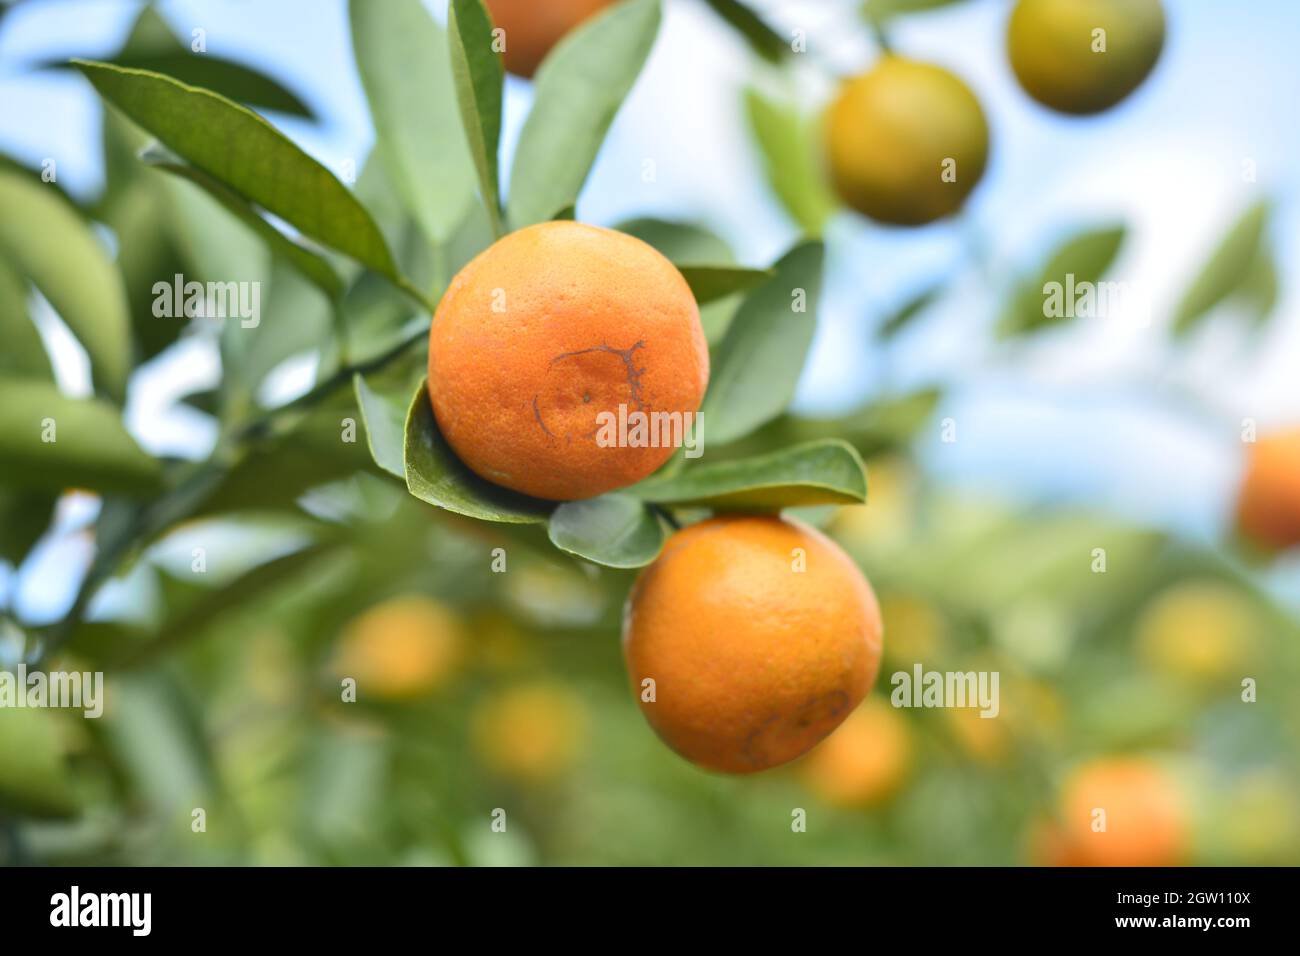 Close-up Of Orange Fruits On Tree Stock Photo